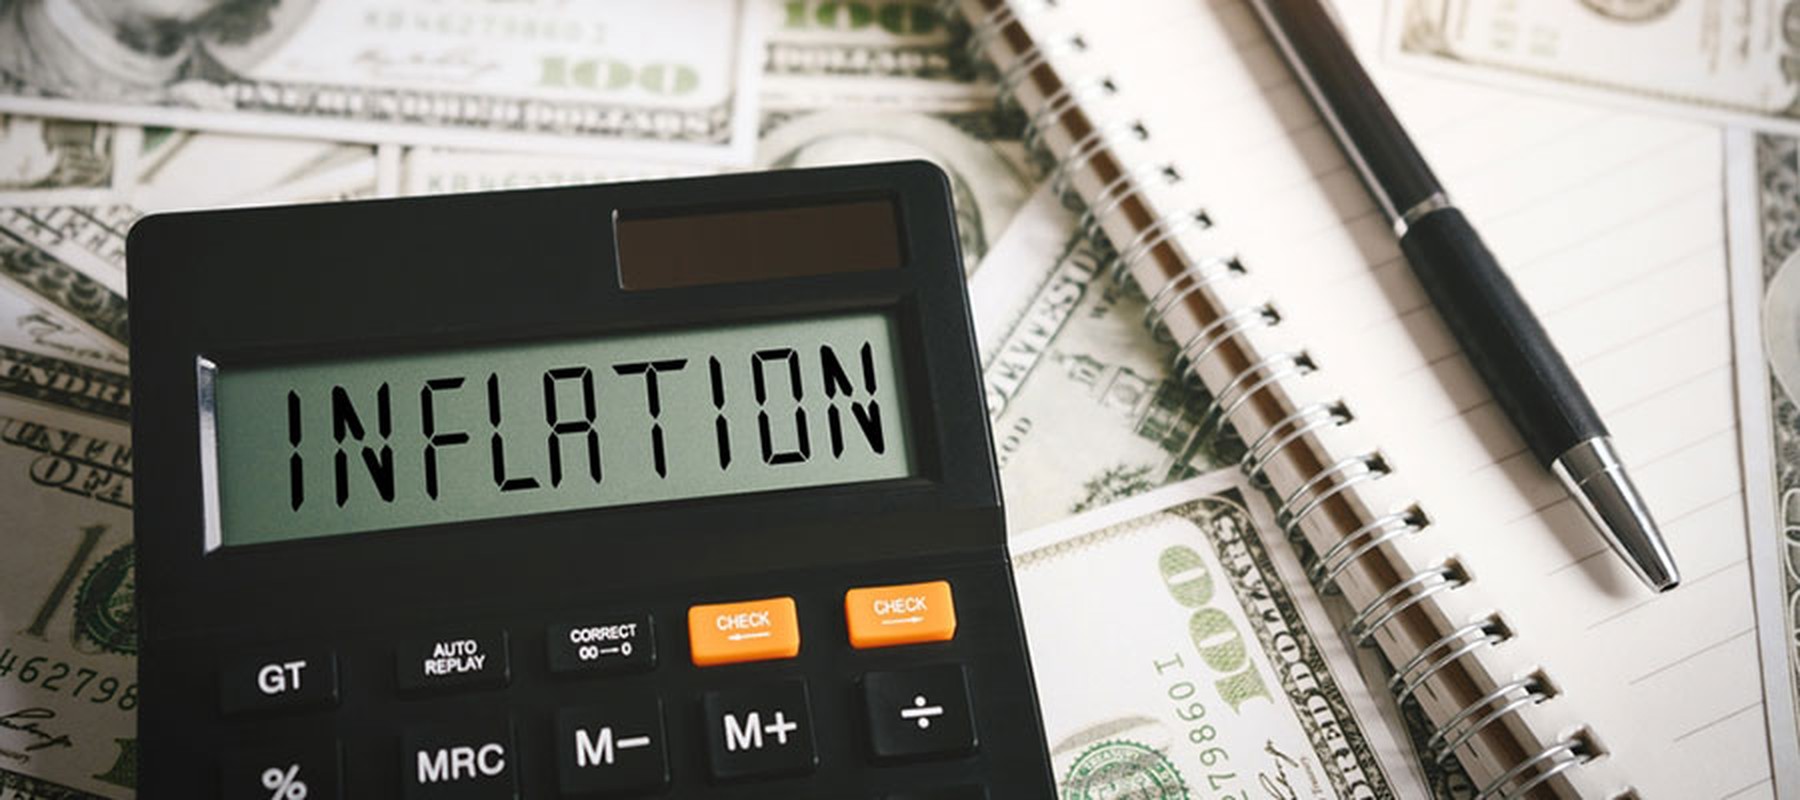 Calculadora negra con la palabra "inflaction" en la pantalla